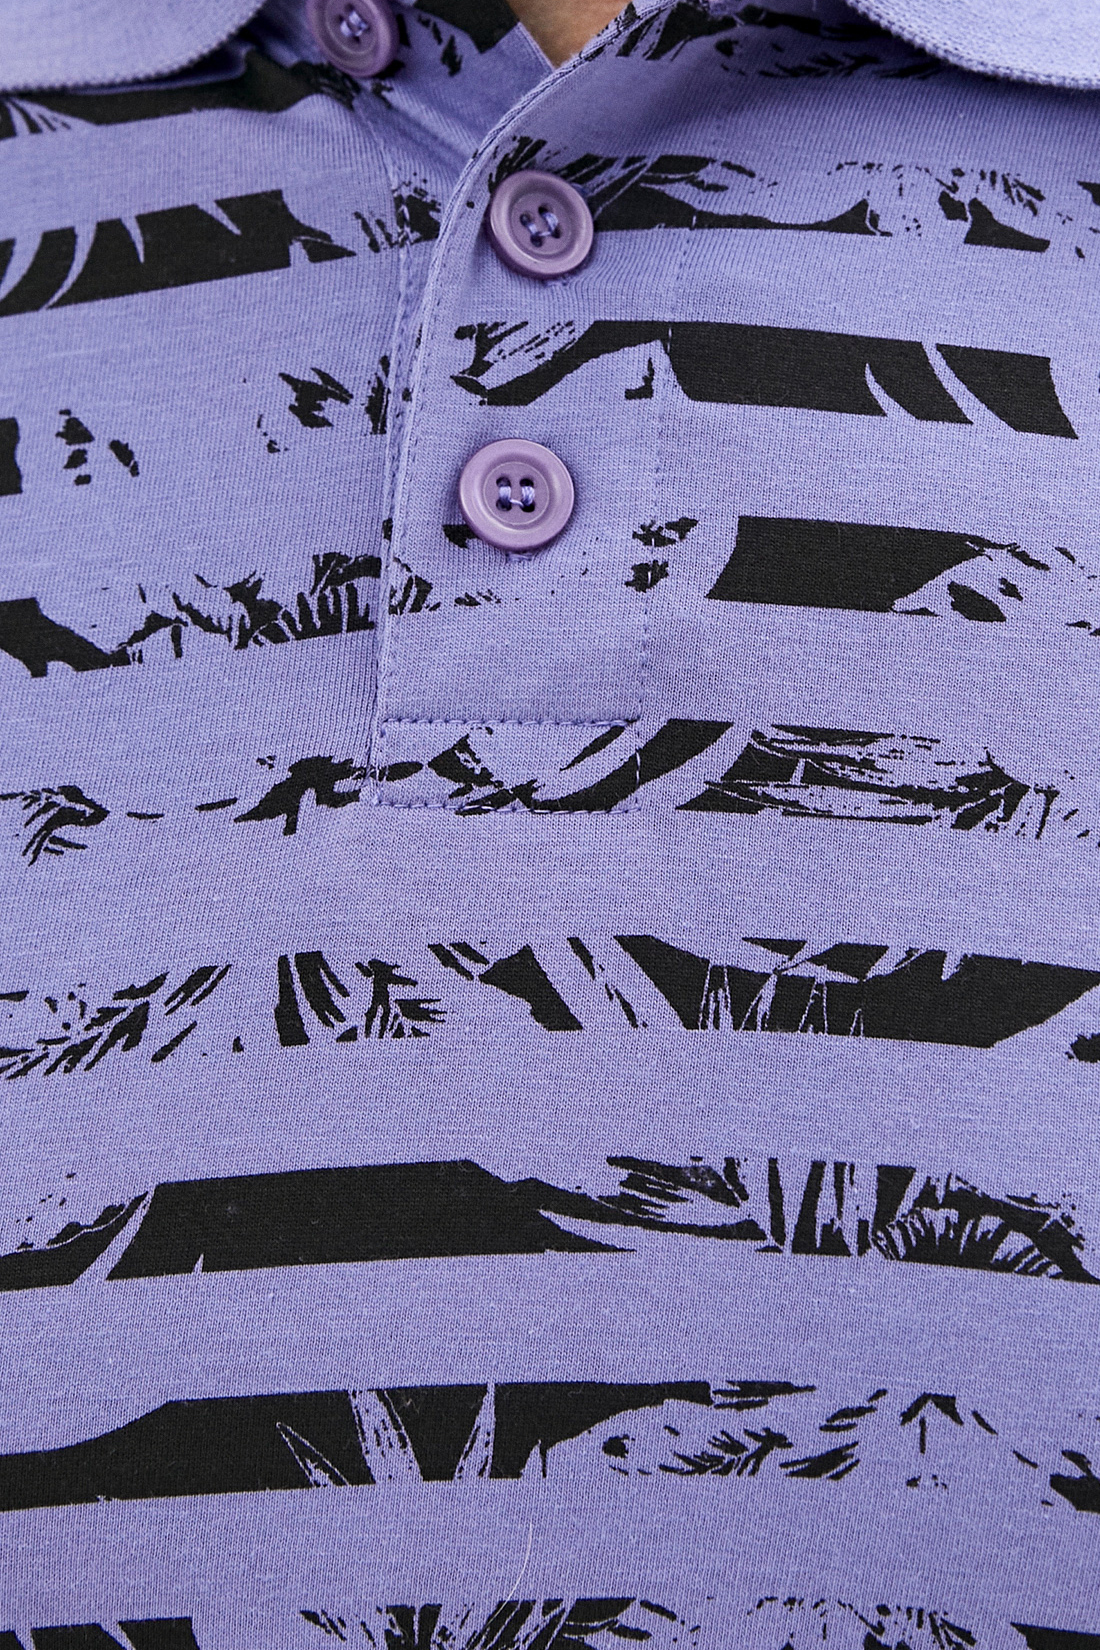 Поло (арт. baon B700040), размер L, цвет фиолетовый Поло (арт. baon B700040) - фото 3